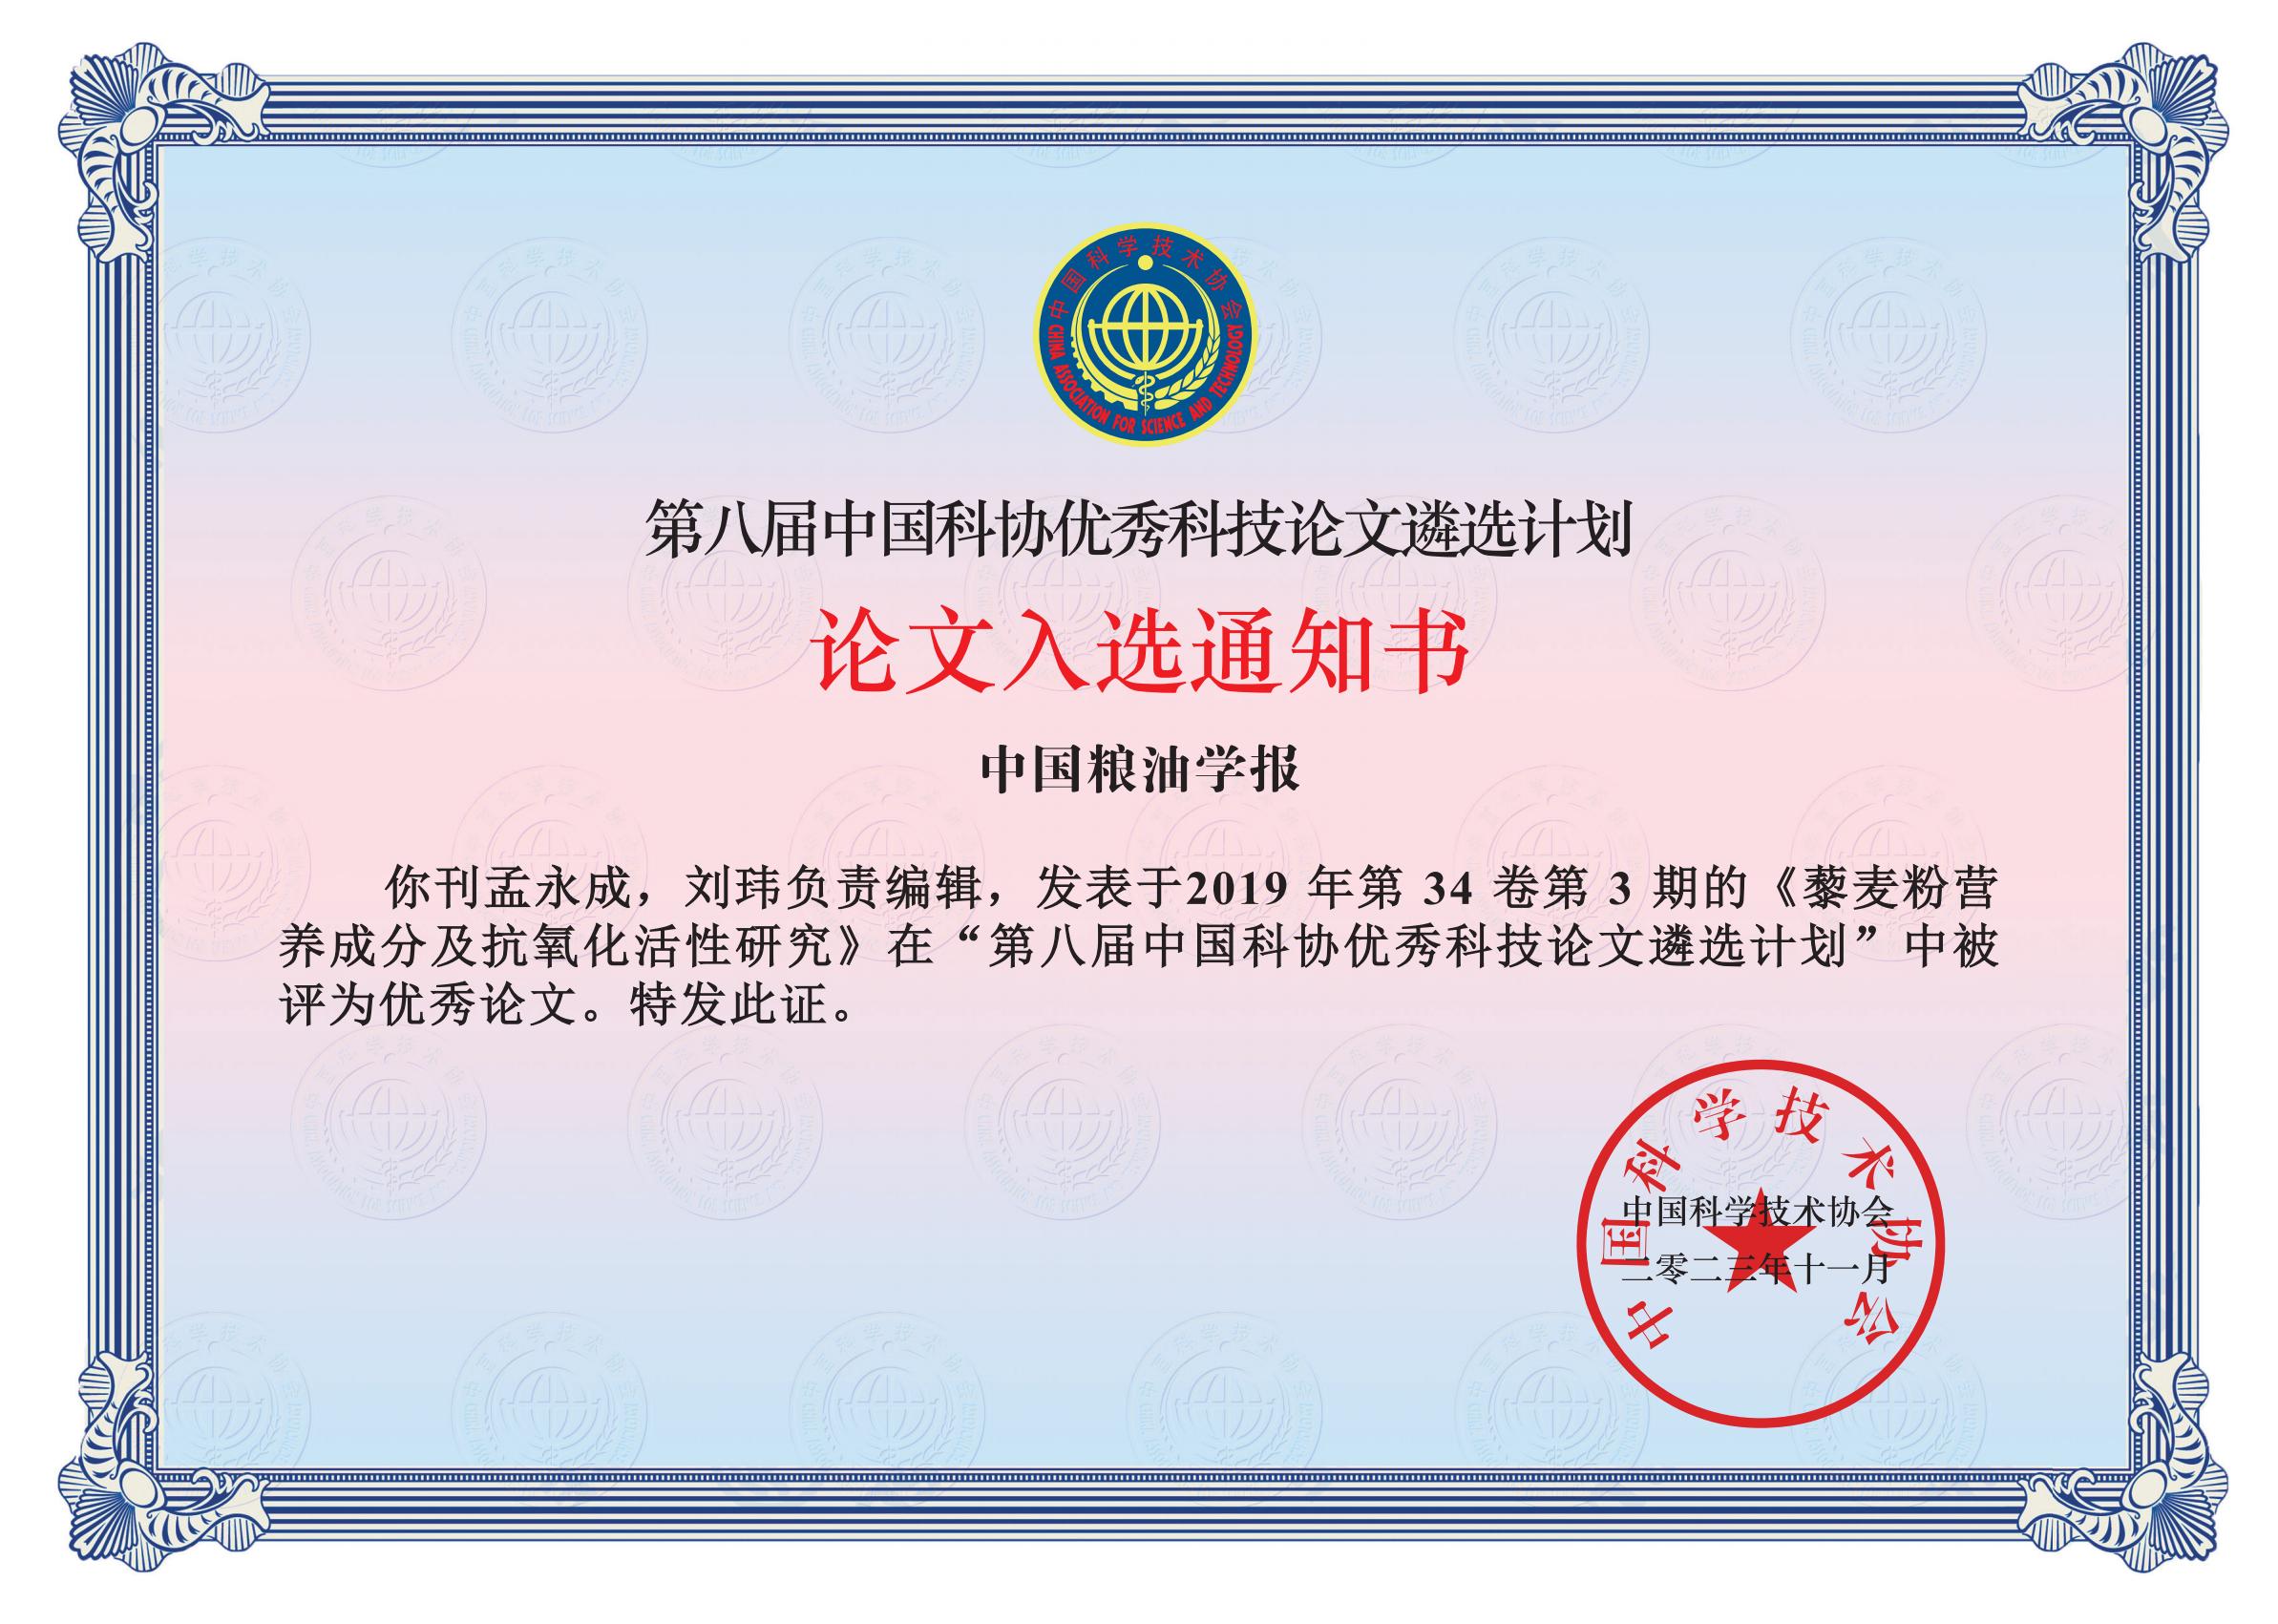 第八届中国粮油学报-编辑入选证书-111_00.jpg